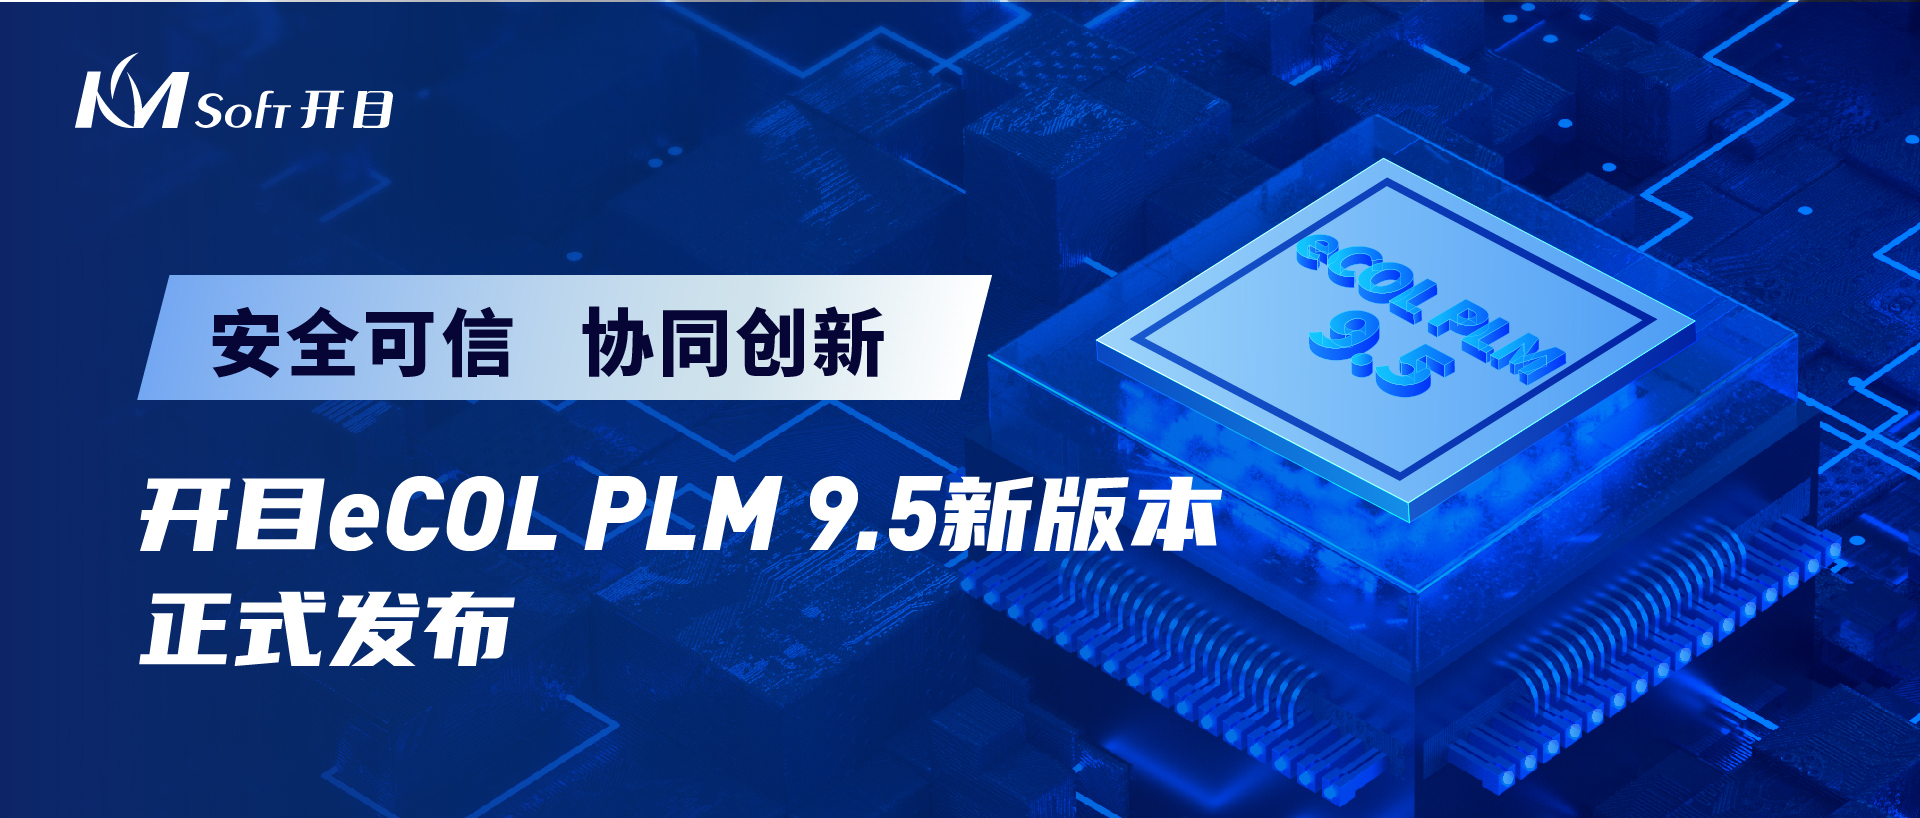 开目软件发布eCOL PLM 9.5 跨平台适配新版本，打造安全可信数字化研发解决方案